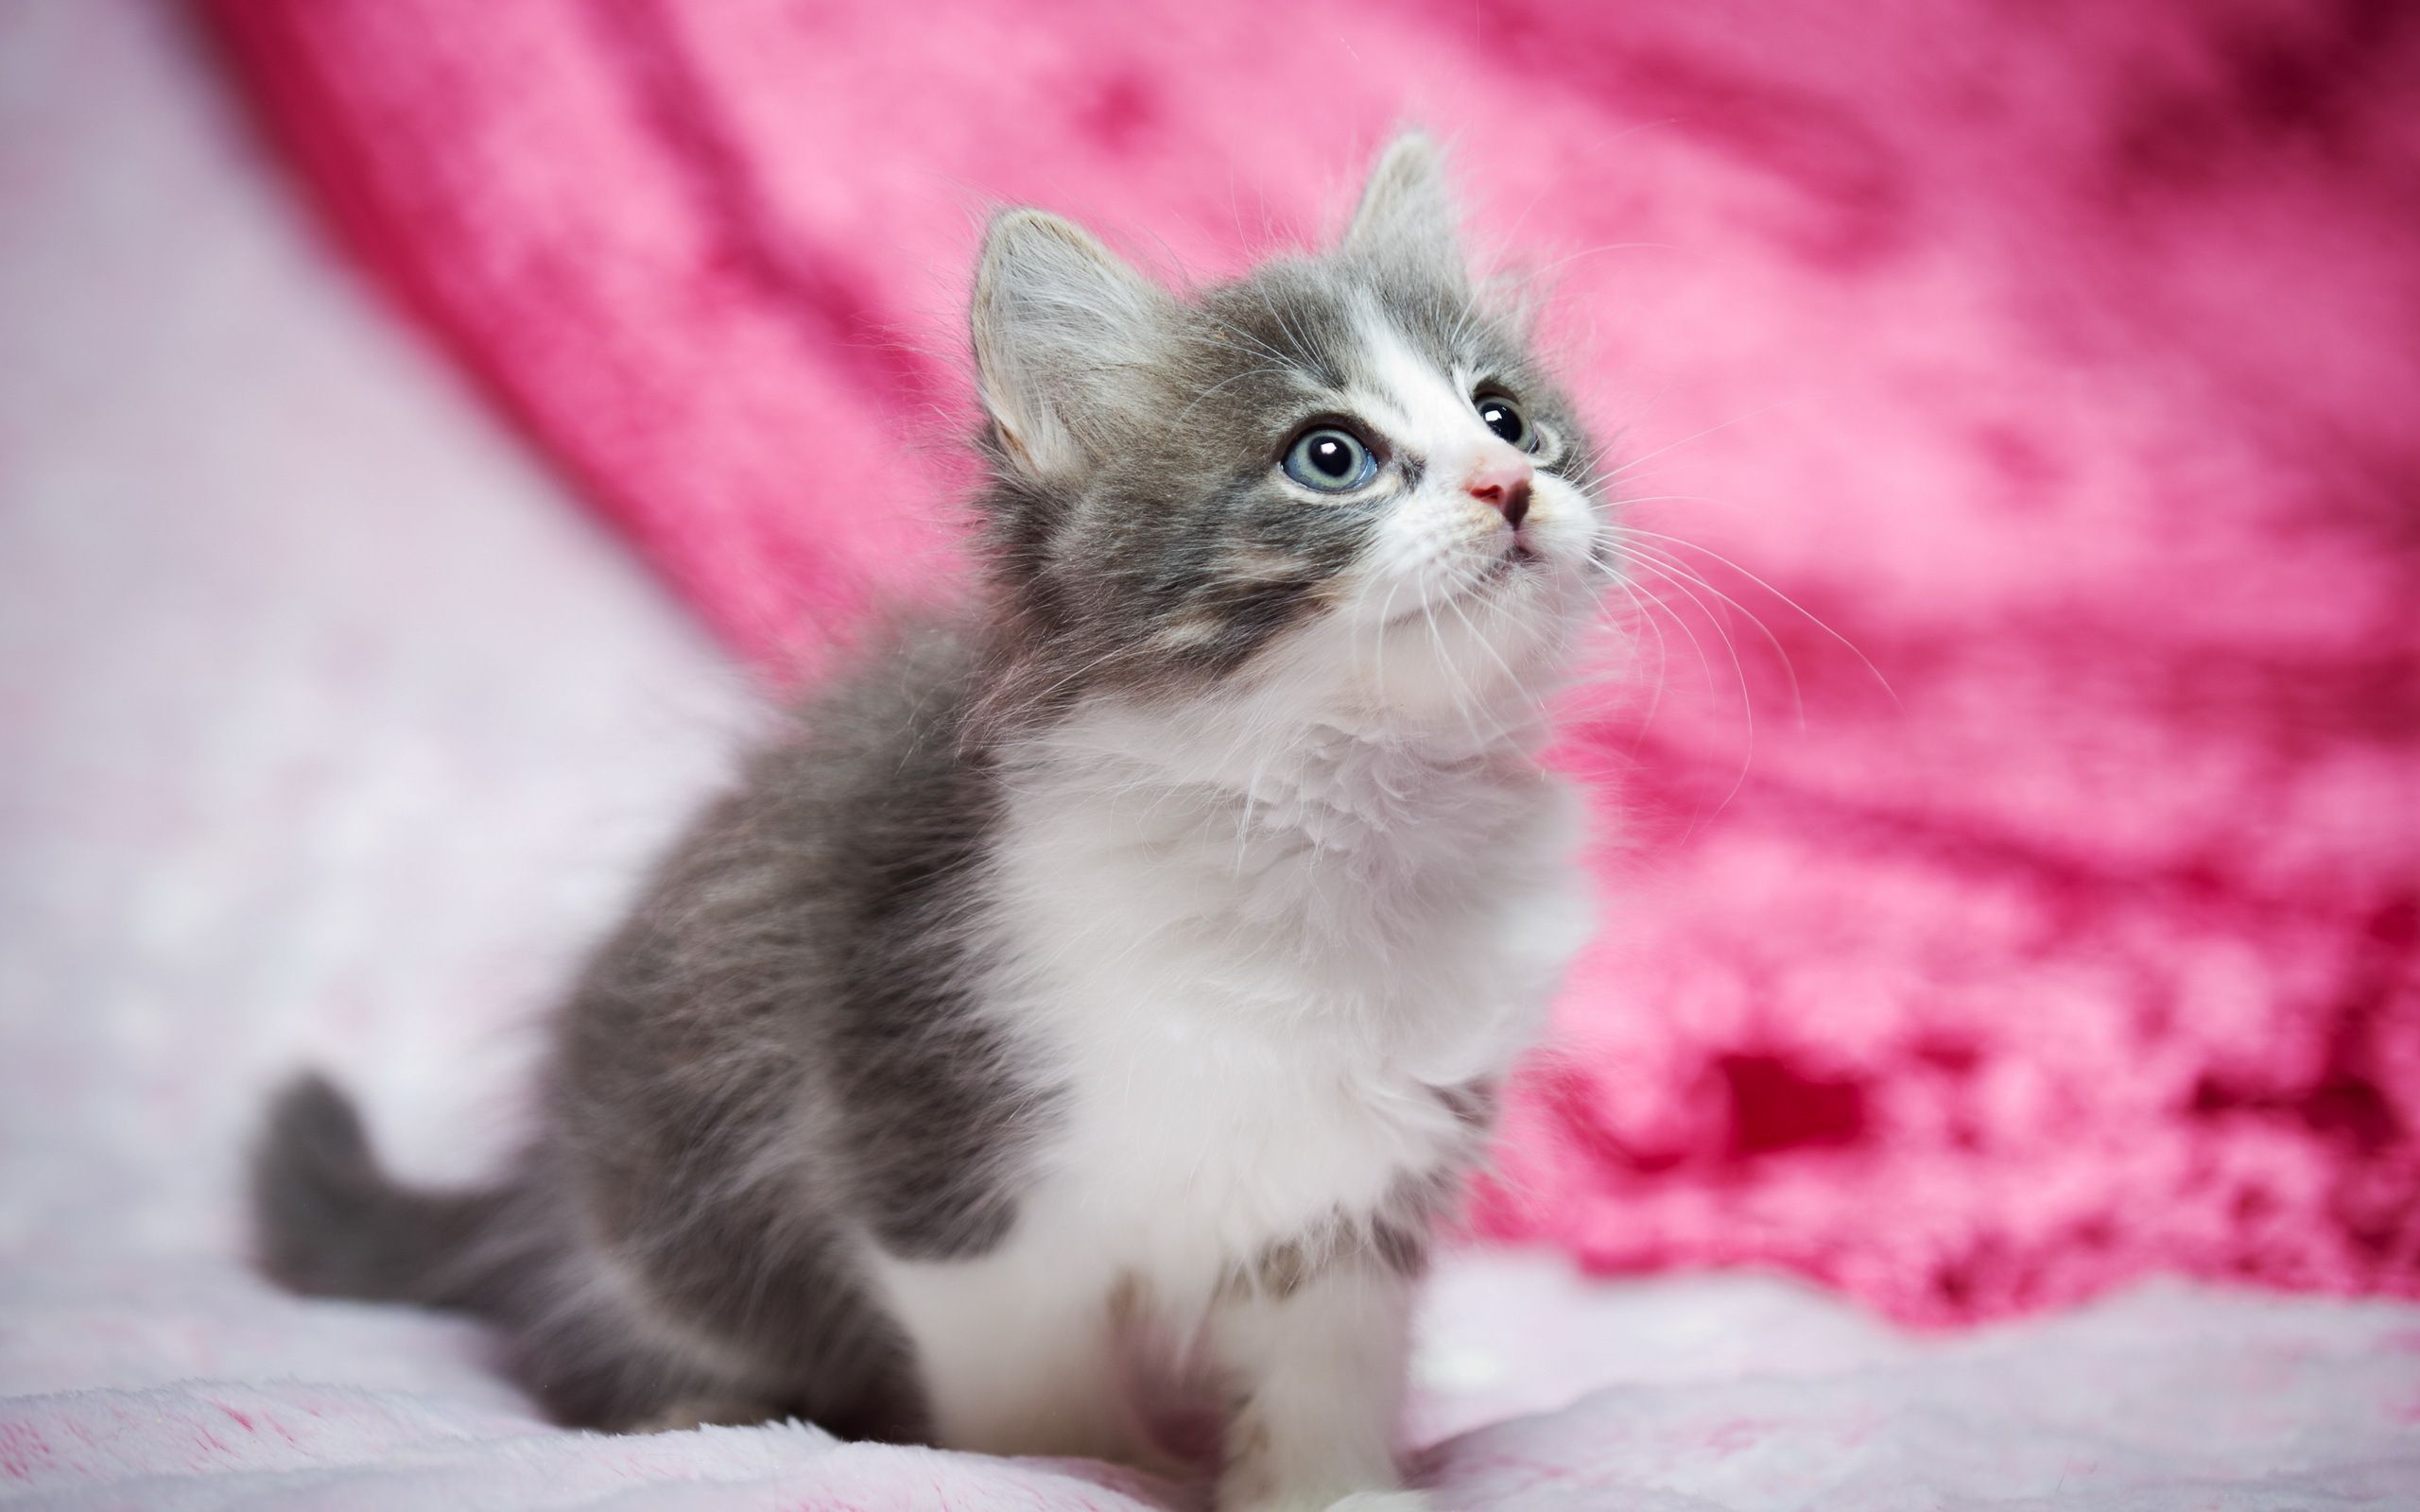 Hình nền mèo con màu hồng: Bạn có bao giờ nhìn thấy một chú mèo con xinh đẹp như thế này không? Đôi mắt to tròn, lông mềm mịn và màu hồng đáng yêu - chú mèo này sẽ tạo ra cảm giác yêu đời và tình yêu vô bờ bến với động vật. Nhấp chuột vào hình ảnh để xem nó thật rõ nét.